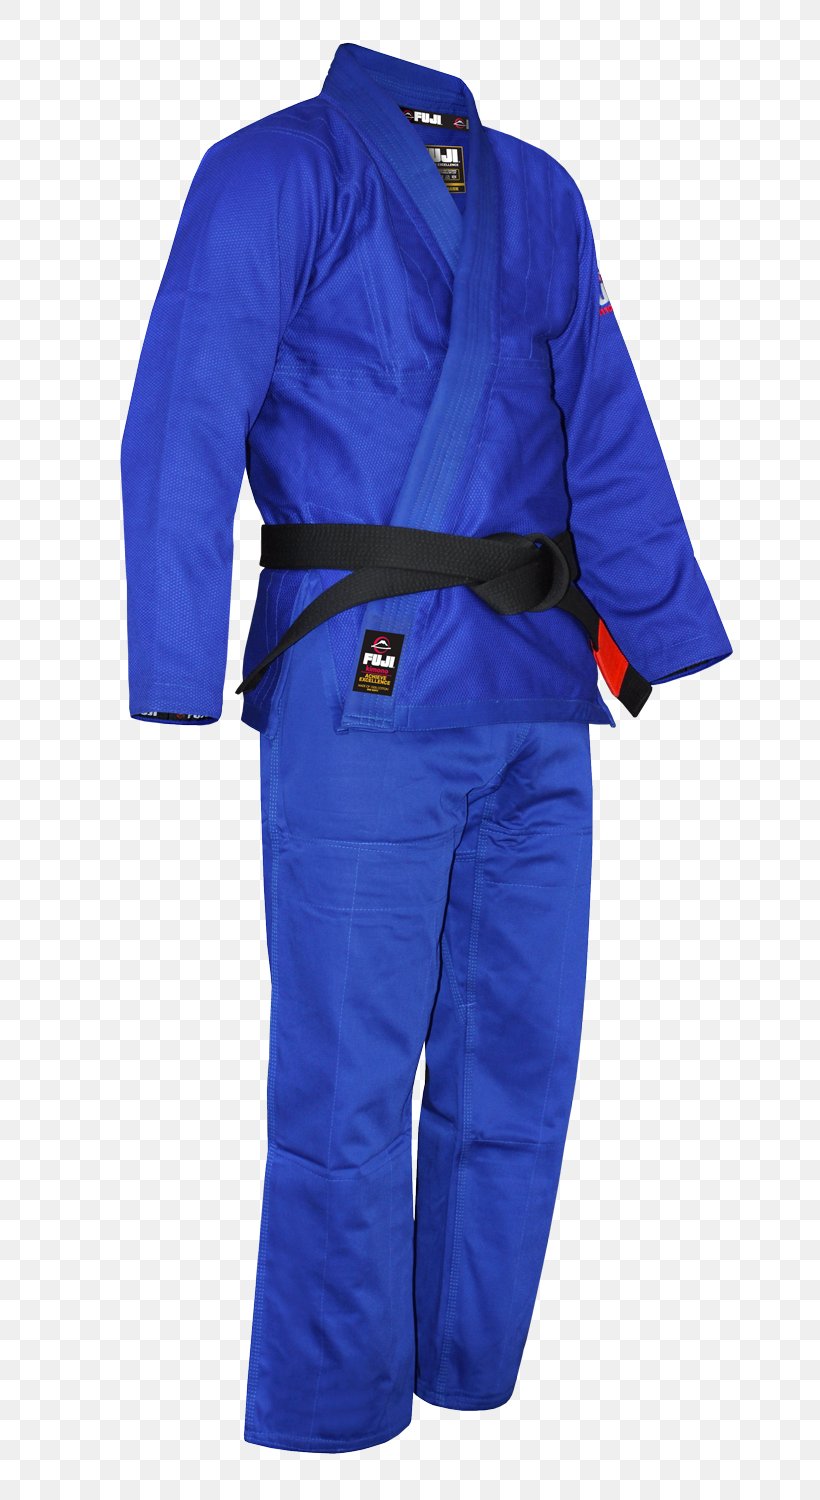 Brazilian Jiu-jitsu Gi Jujutsu Dobok Judogi, PNG, 761x1500px, Brazilian Jiujitsu Gi, Blue, Boxing, Brazilian Jiujitsu, Cobalt Blue Download Free